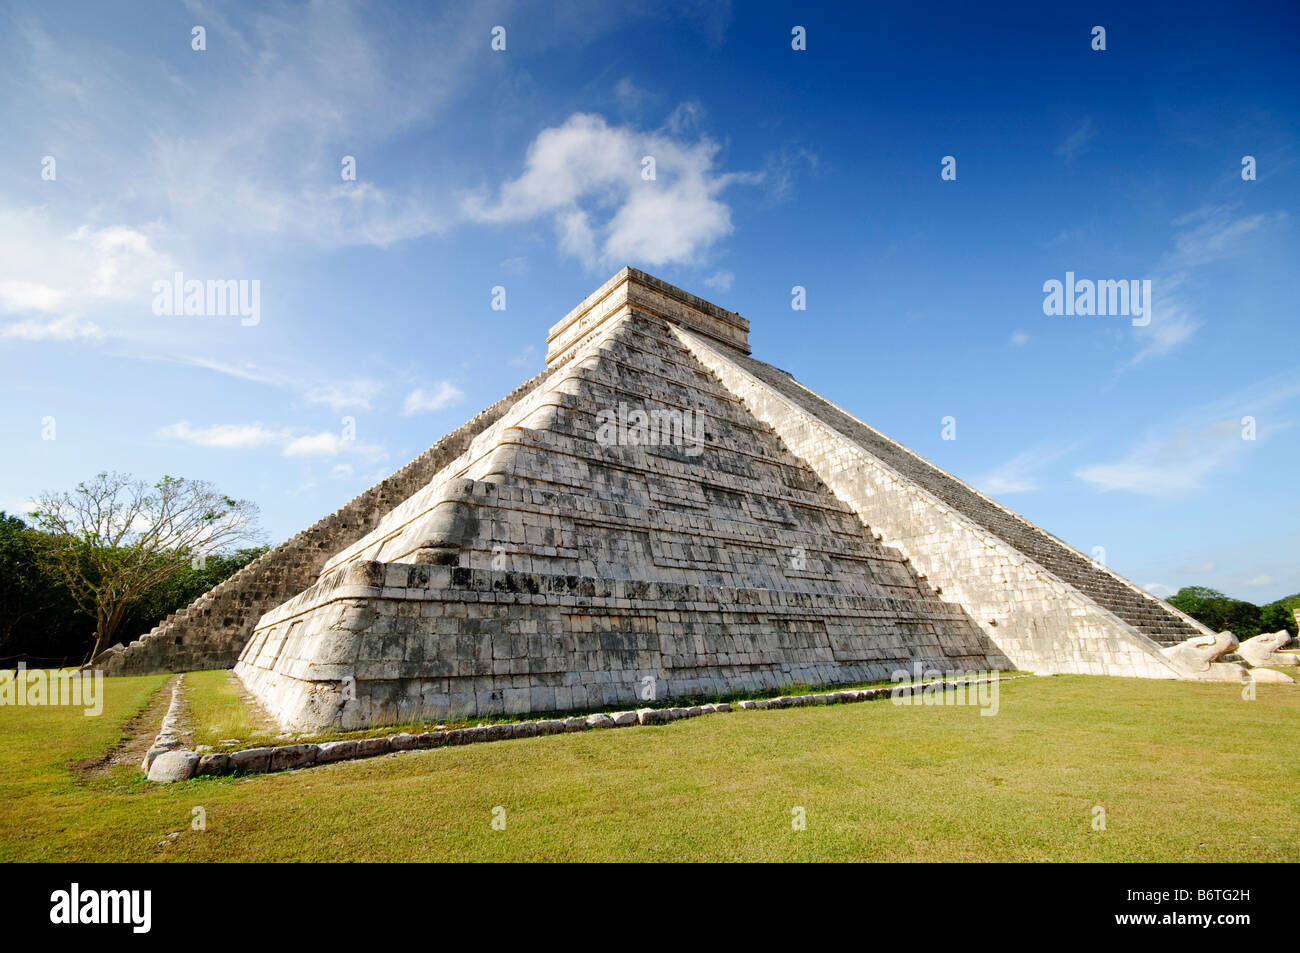 CHICHEN ITZA, Mexique - El Castillo (également connu sous le nom de Temple de Kuklcan) aux ruines mayas anciennes de Chichen Itza, Yucatan, Mexique 081216093256 4443.NEF. Chichen Itza, situé sur la péninsule du Yucatan au Mexique, est un site archéologique important présentant la riche histoire et les connaissances scientifiques avancées de la civilisation maya antique. Il est plus connu pour la Pyramide Kukulkan, ou « El Castillo », une structure à quatre côtés avec 91 marches de chaque côté, culminant en une seule étape au sommet pour représenter les 365 jours de l'année solaire. Banque D'Images